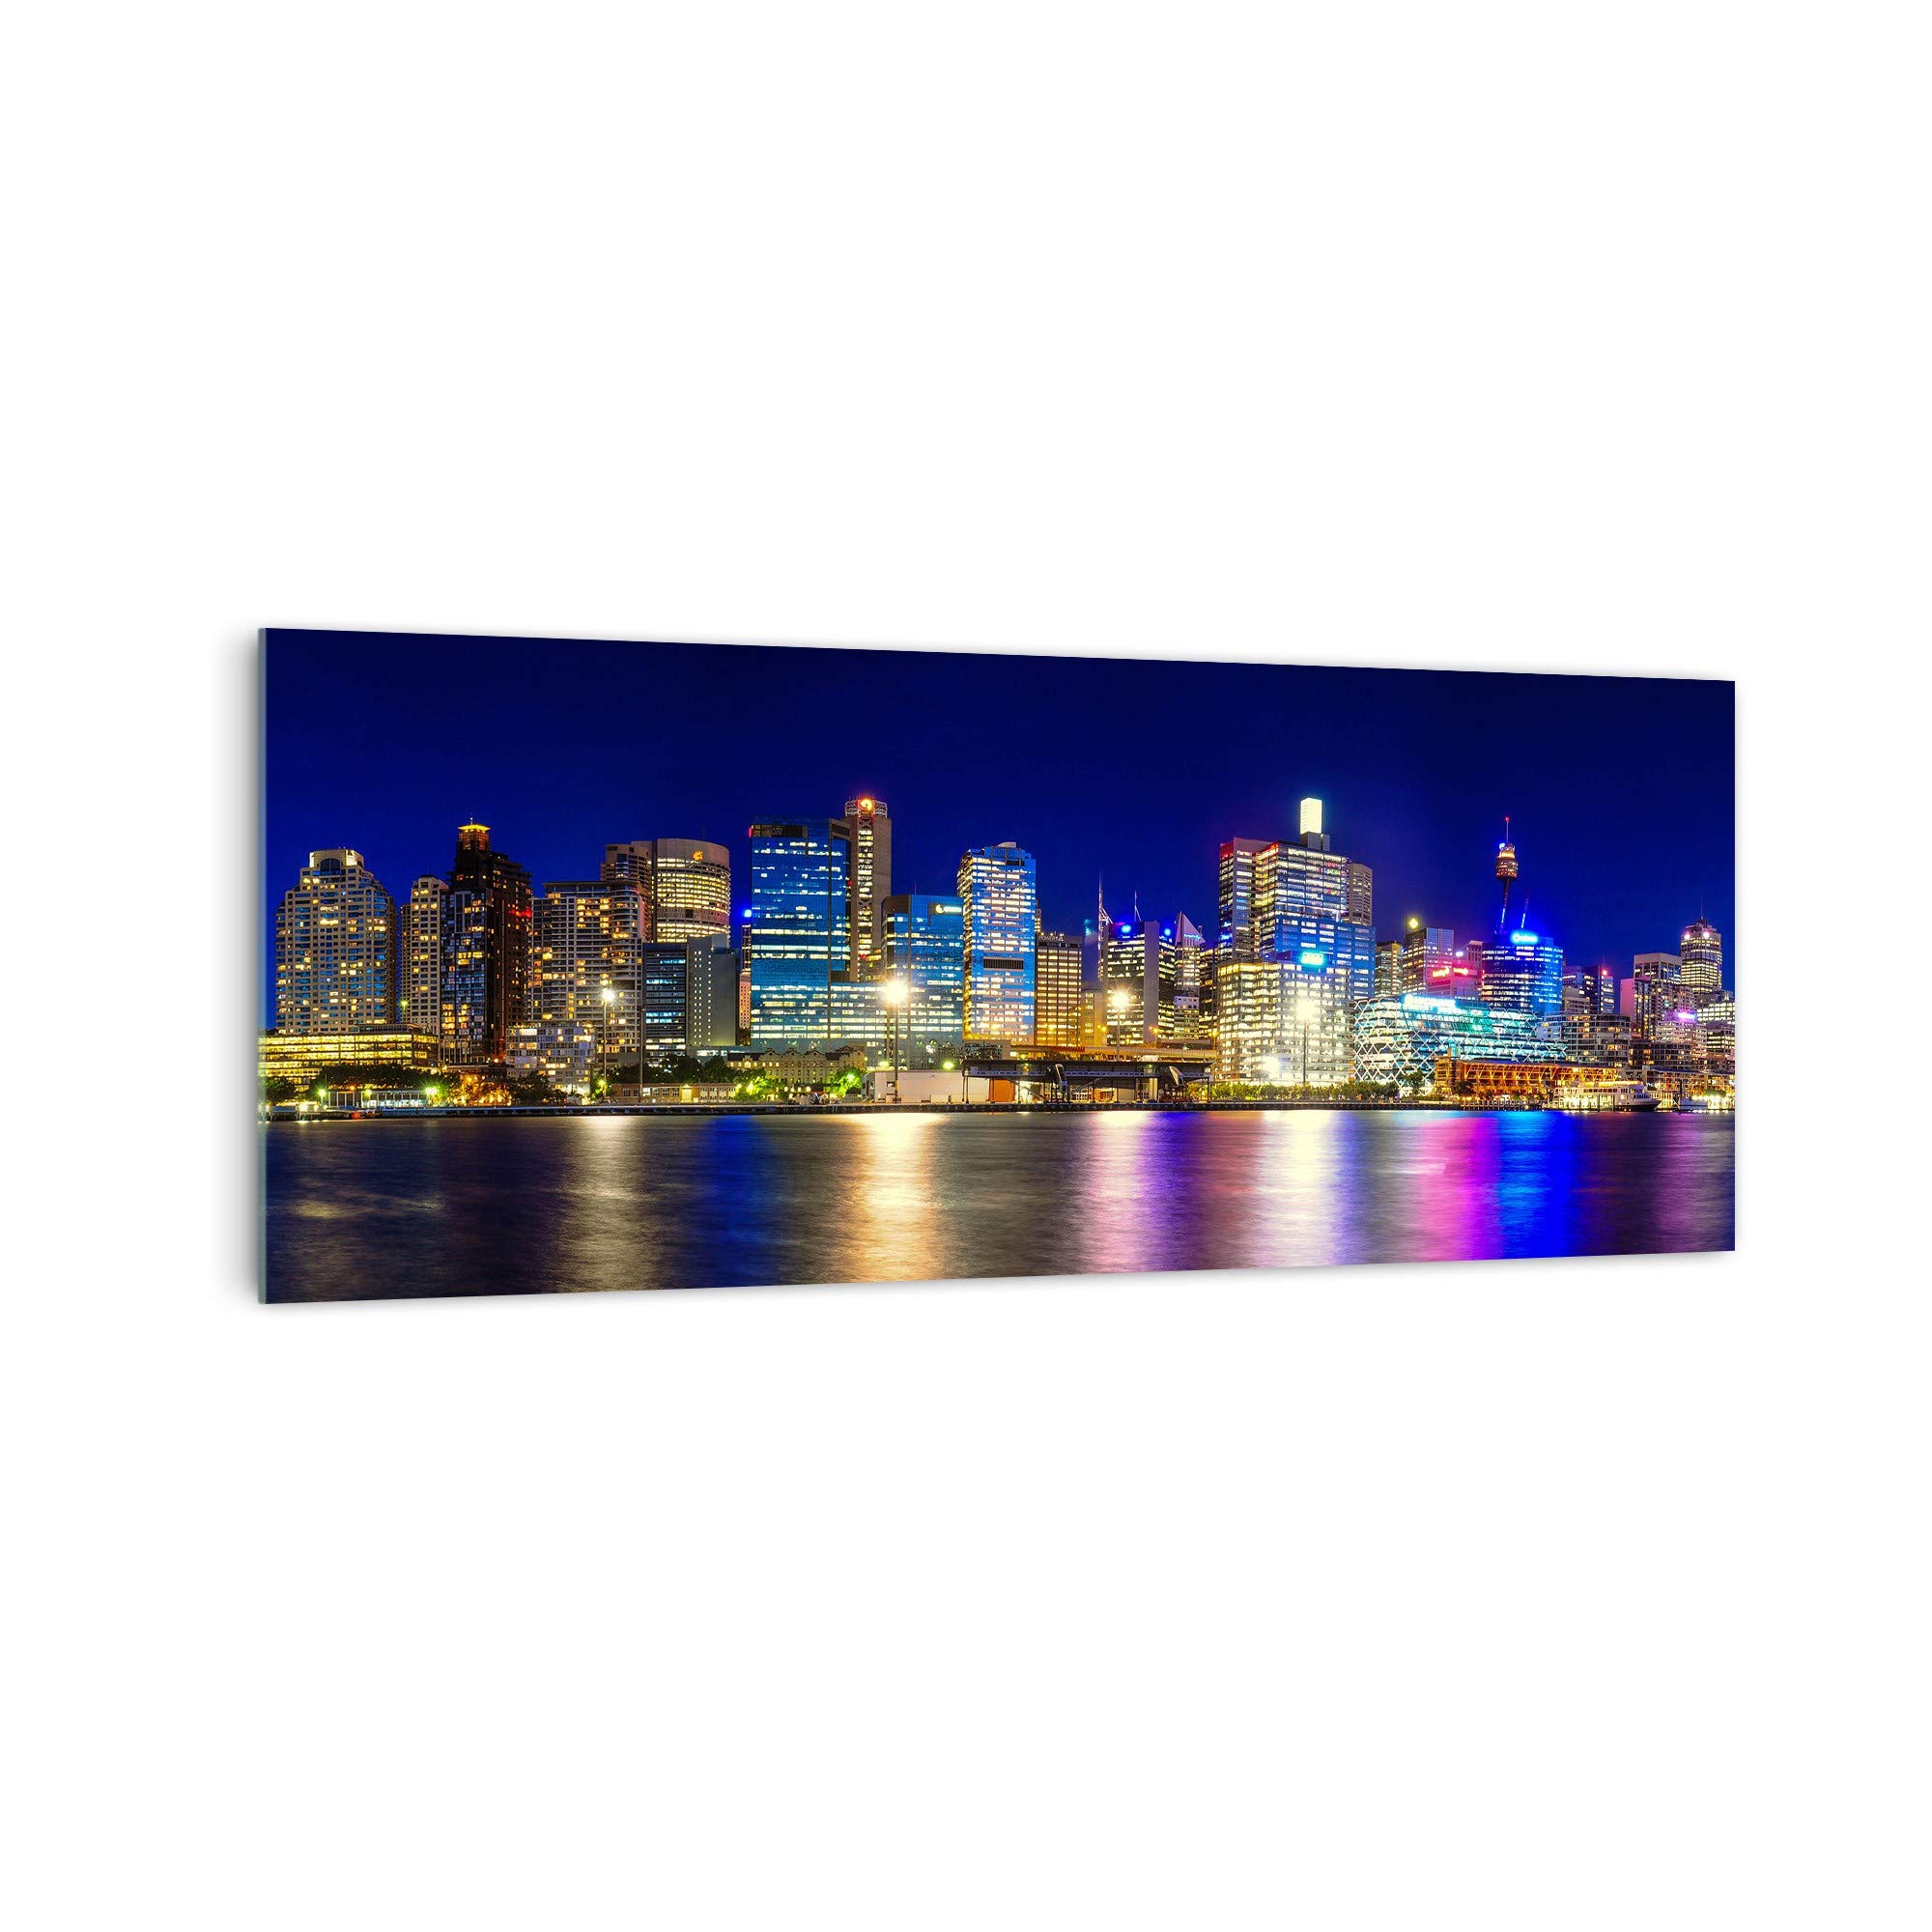 DekoGlas Küchenrückwand 'Sydney bei Nacht' in div. Größen, Glas-Rückwand, Wandpaneele, Spritzschutz & Fliesenspiegel